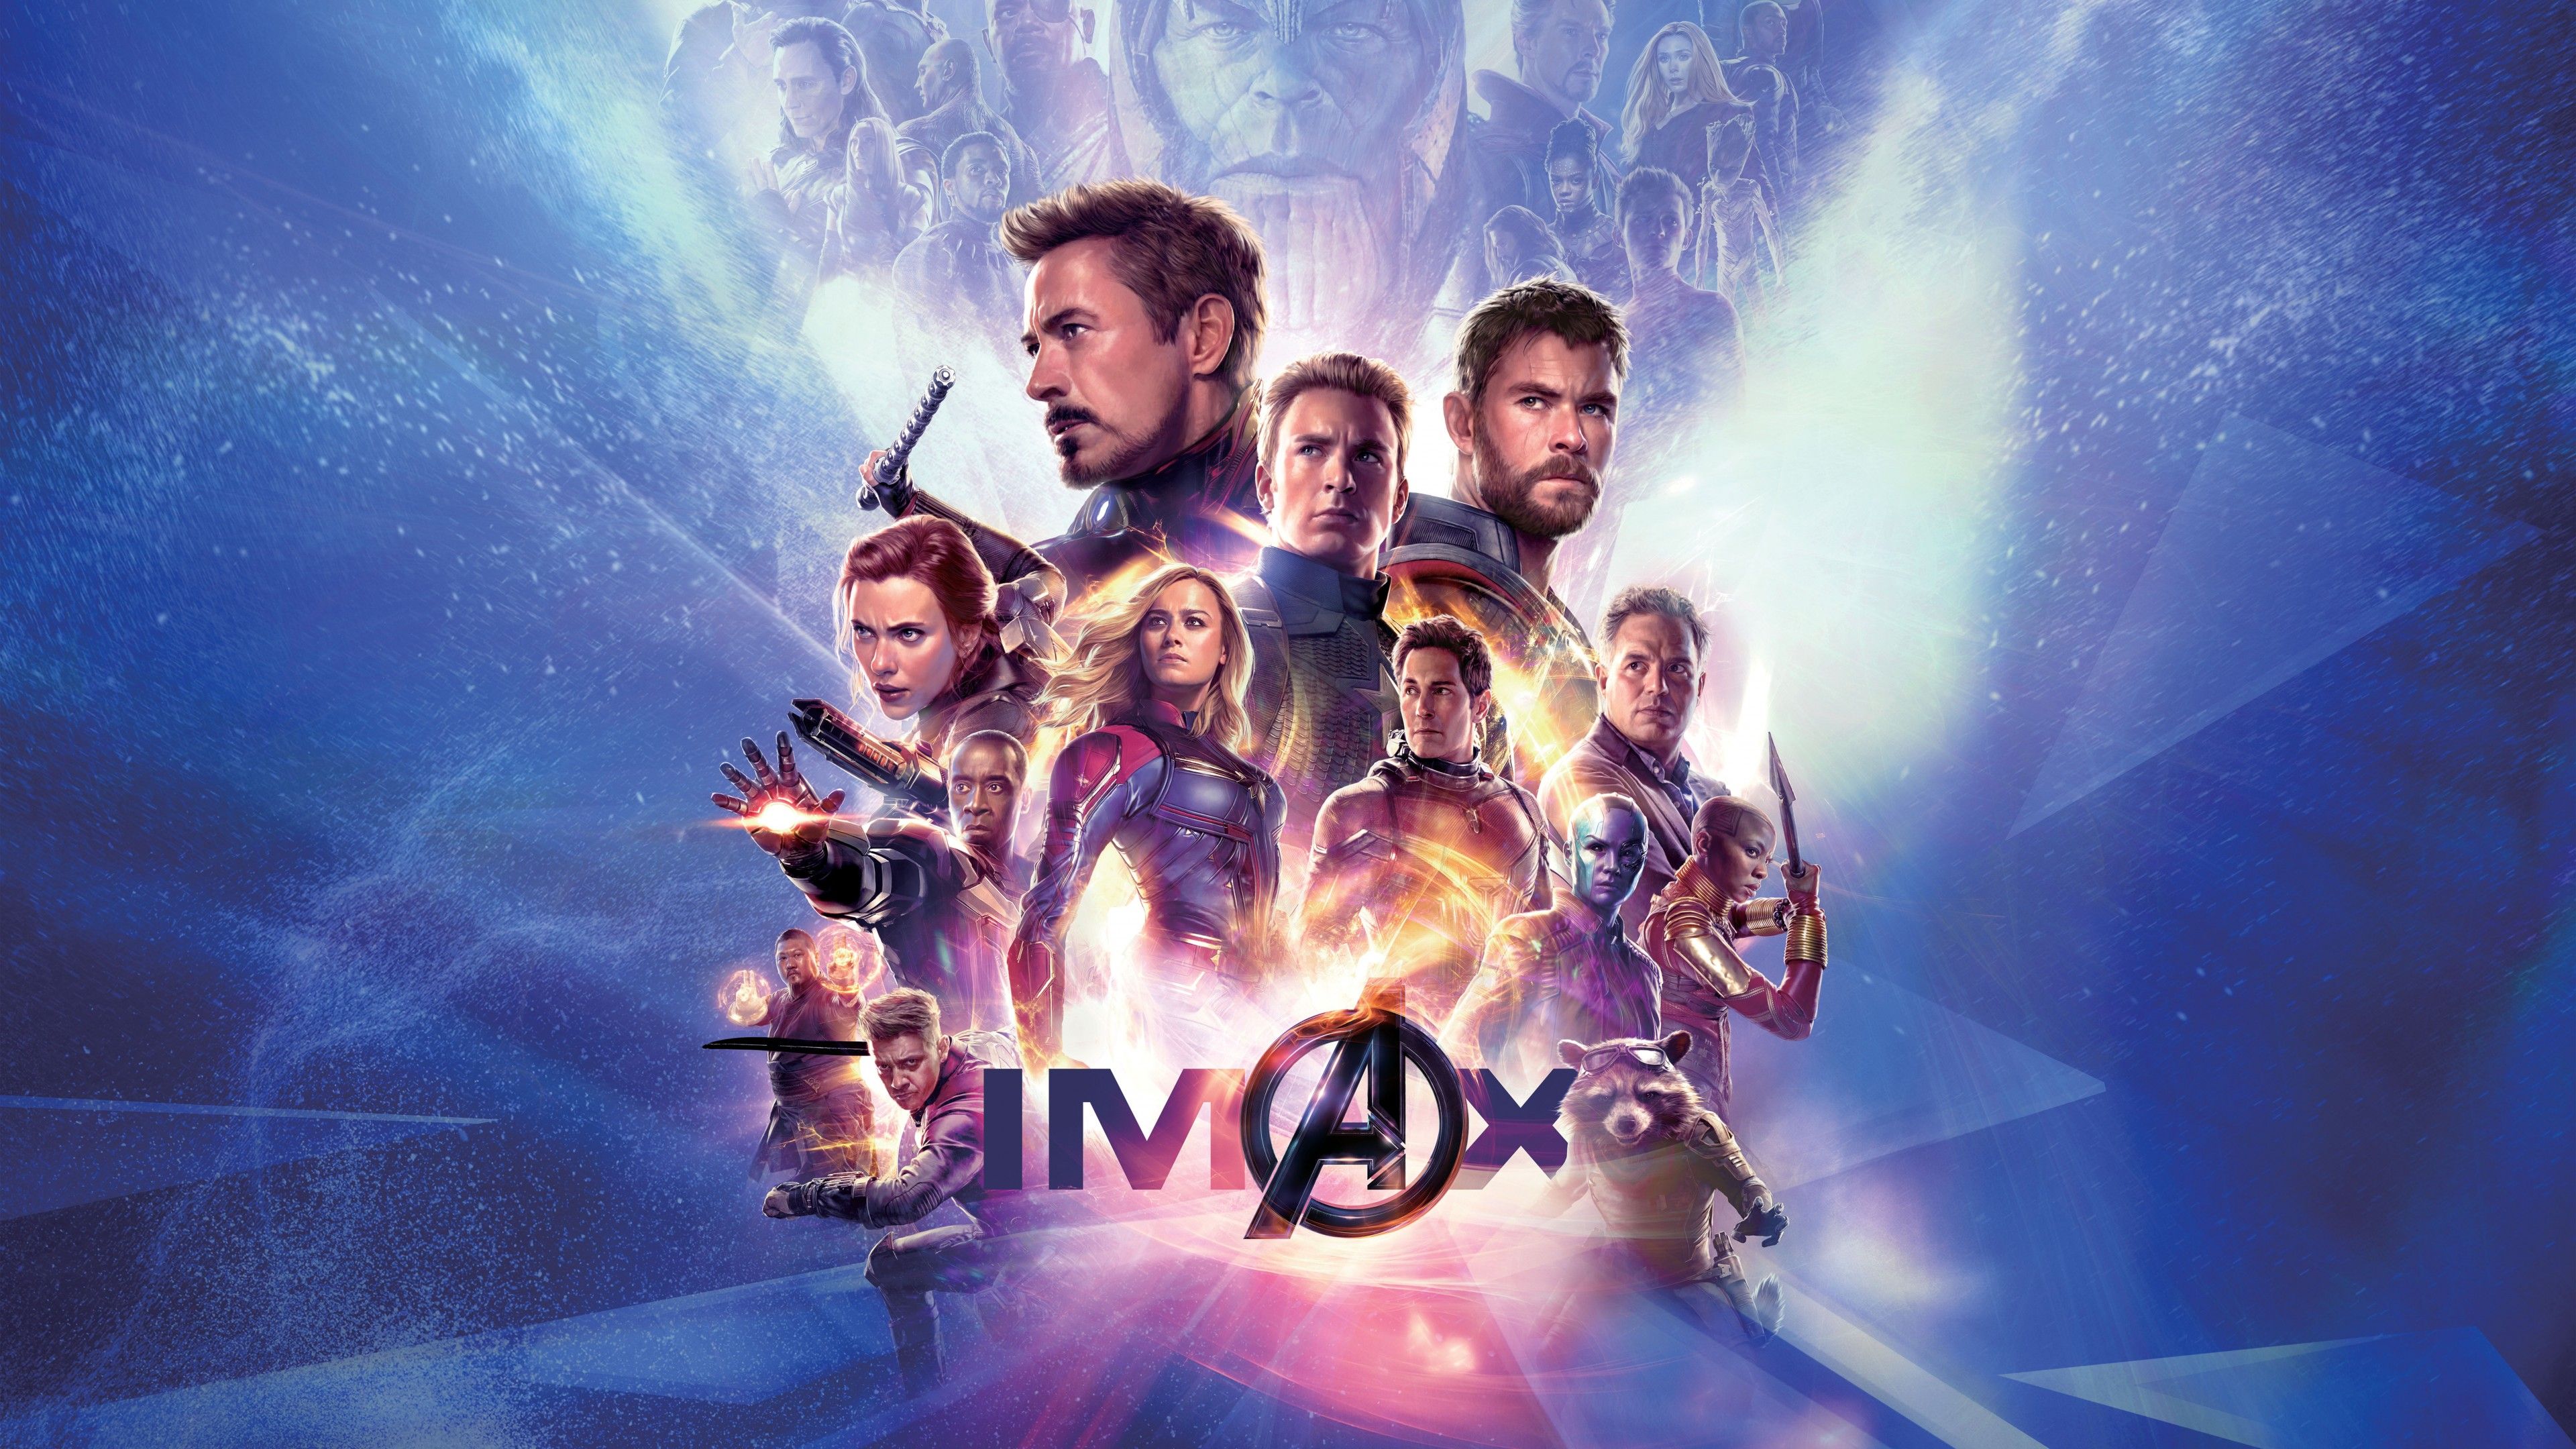 Avengers Endgame 4K Wallpaper IMAX Poster